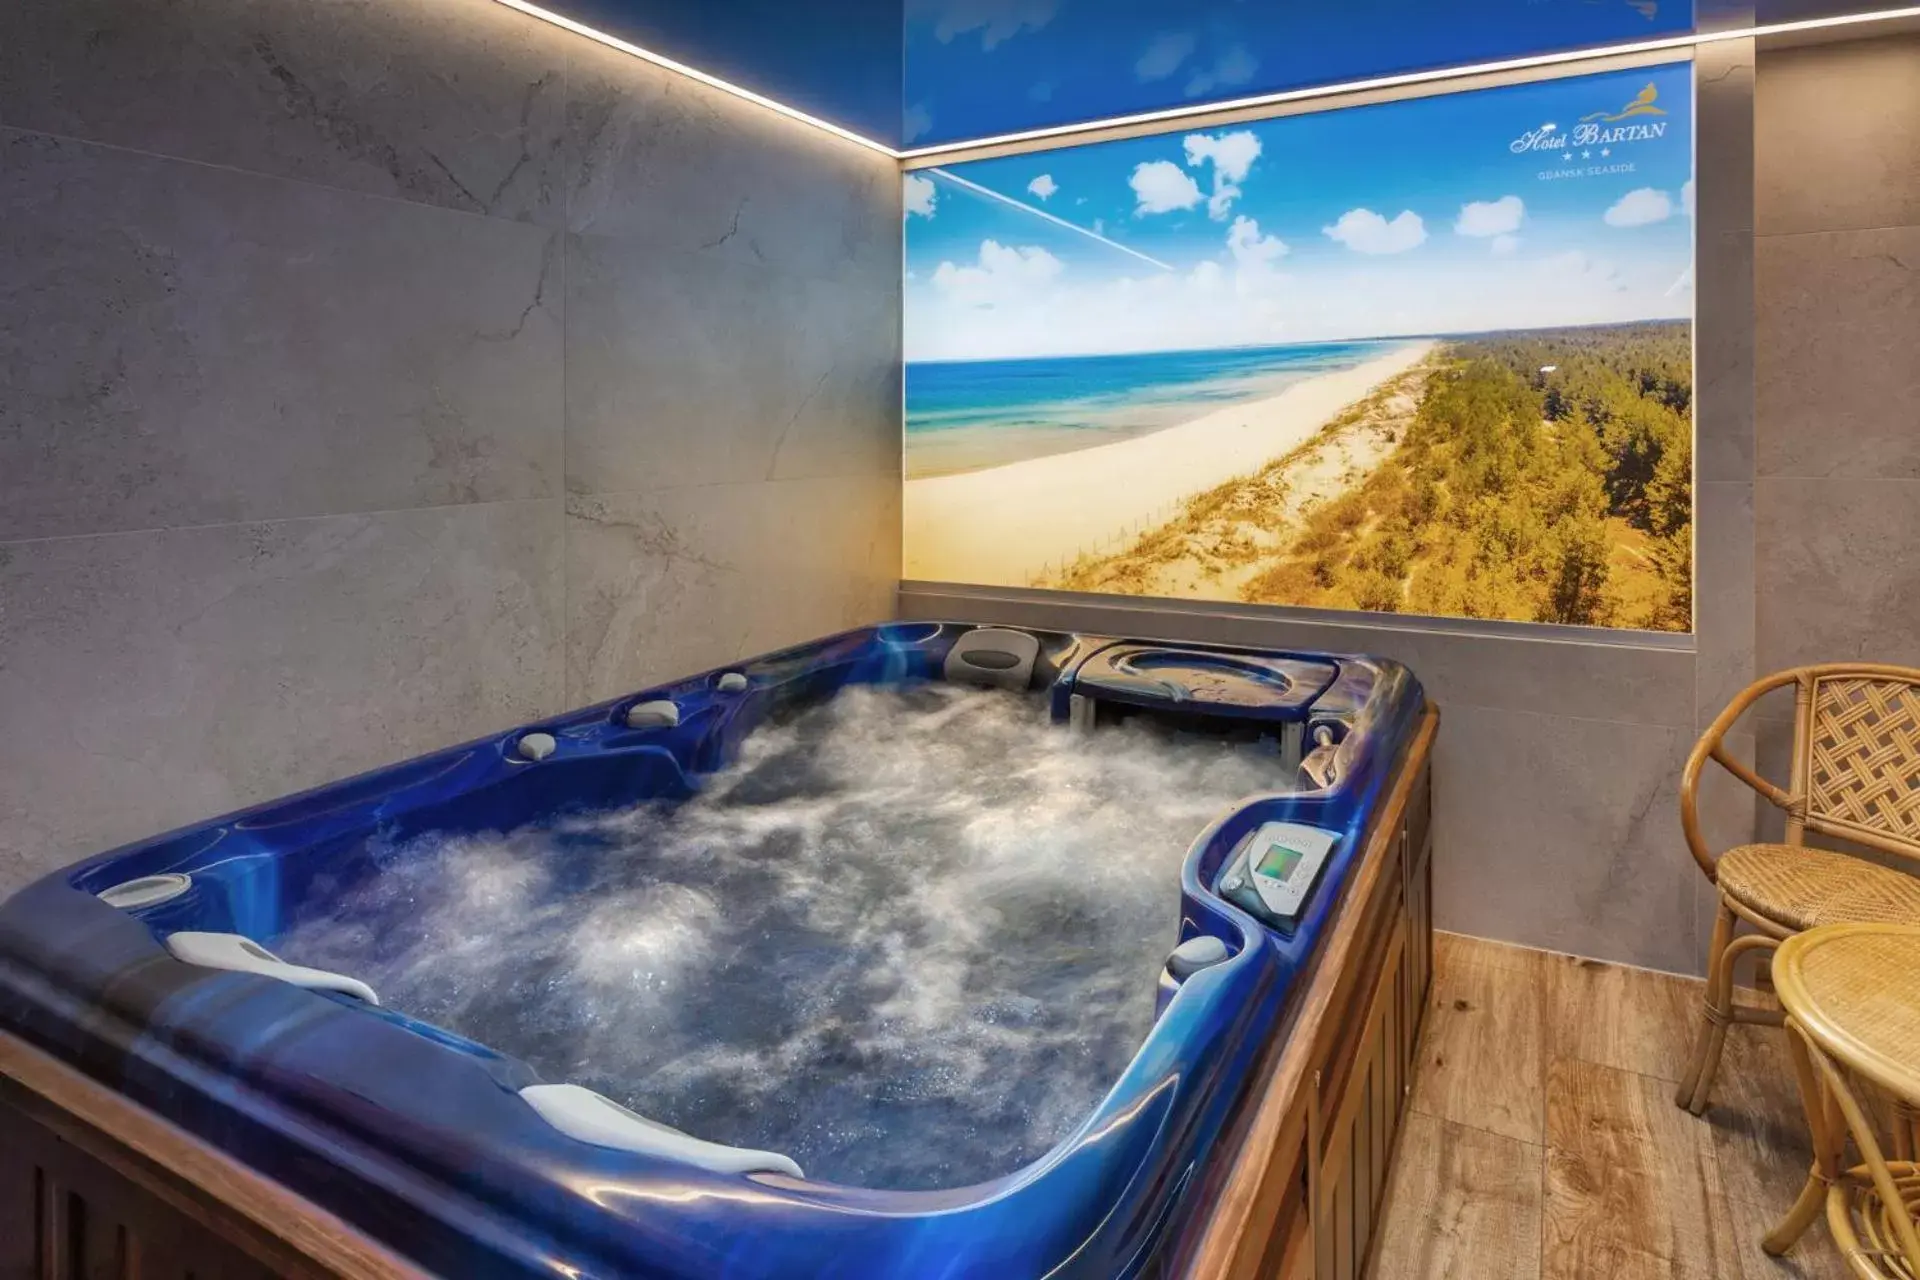 Hot Tub in Hotel Bartan Gdansk Seaside